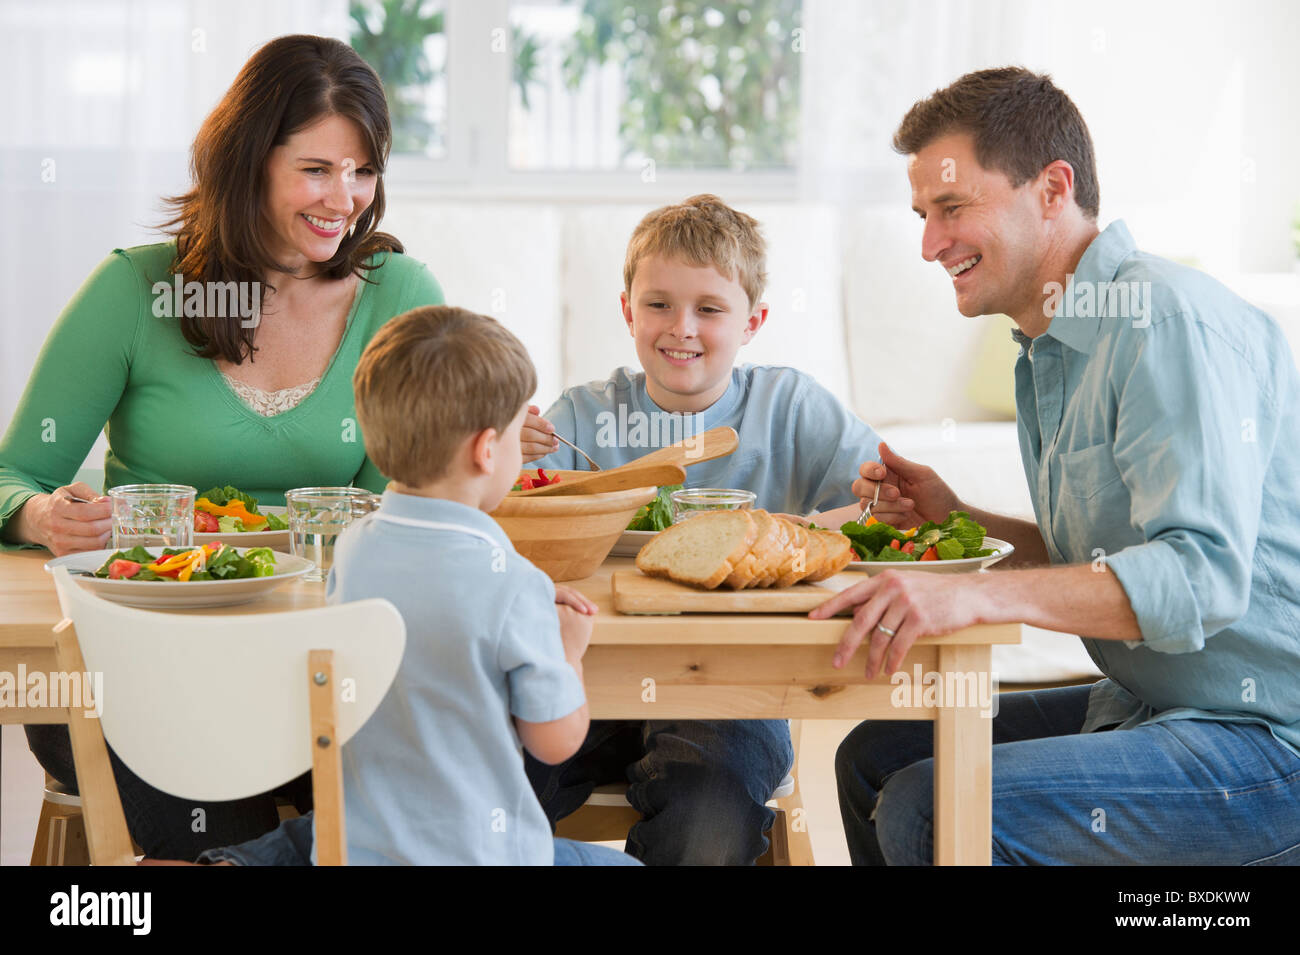 Family eating dinner Stock Photo